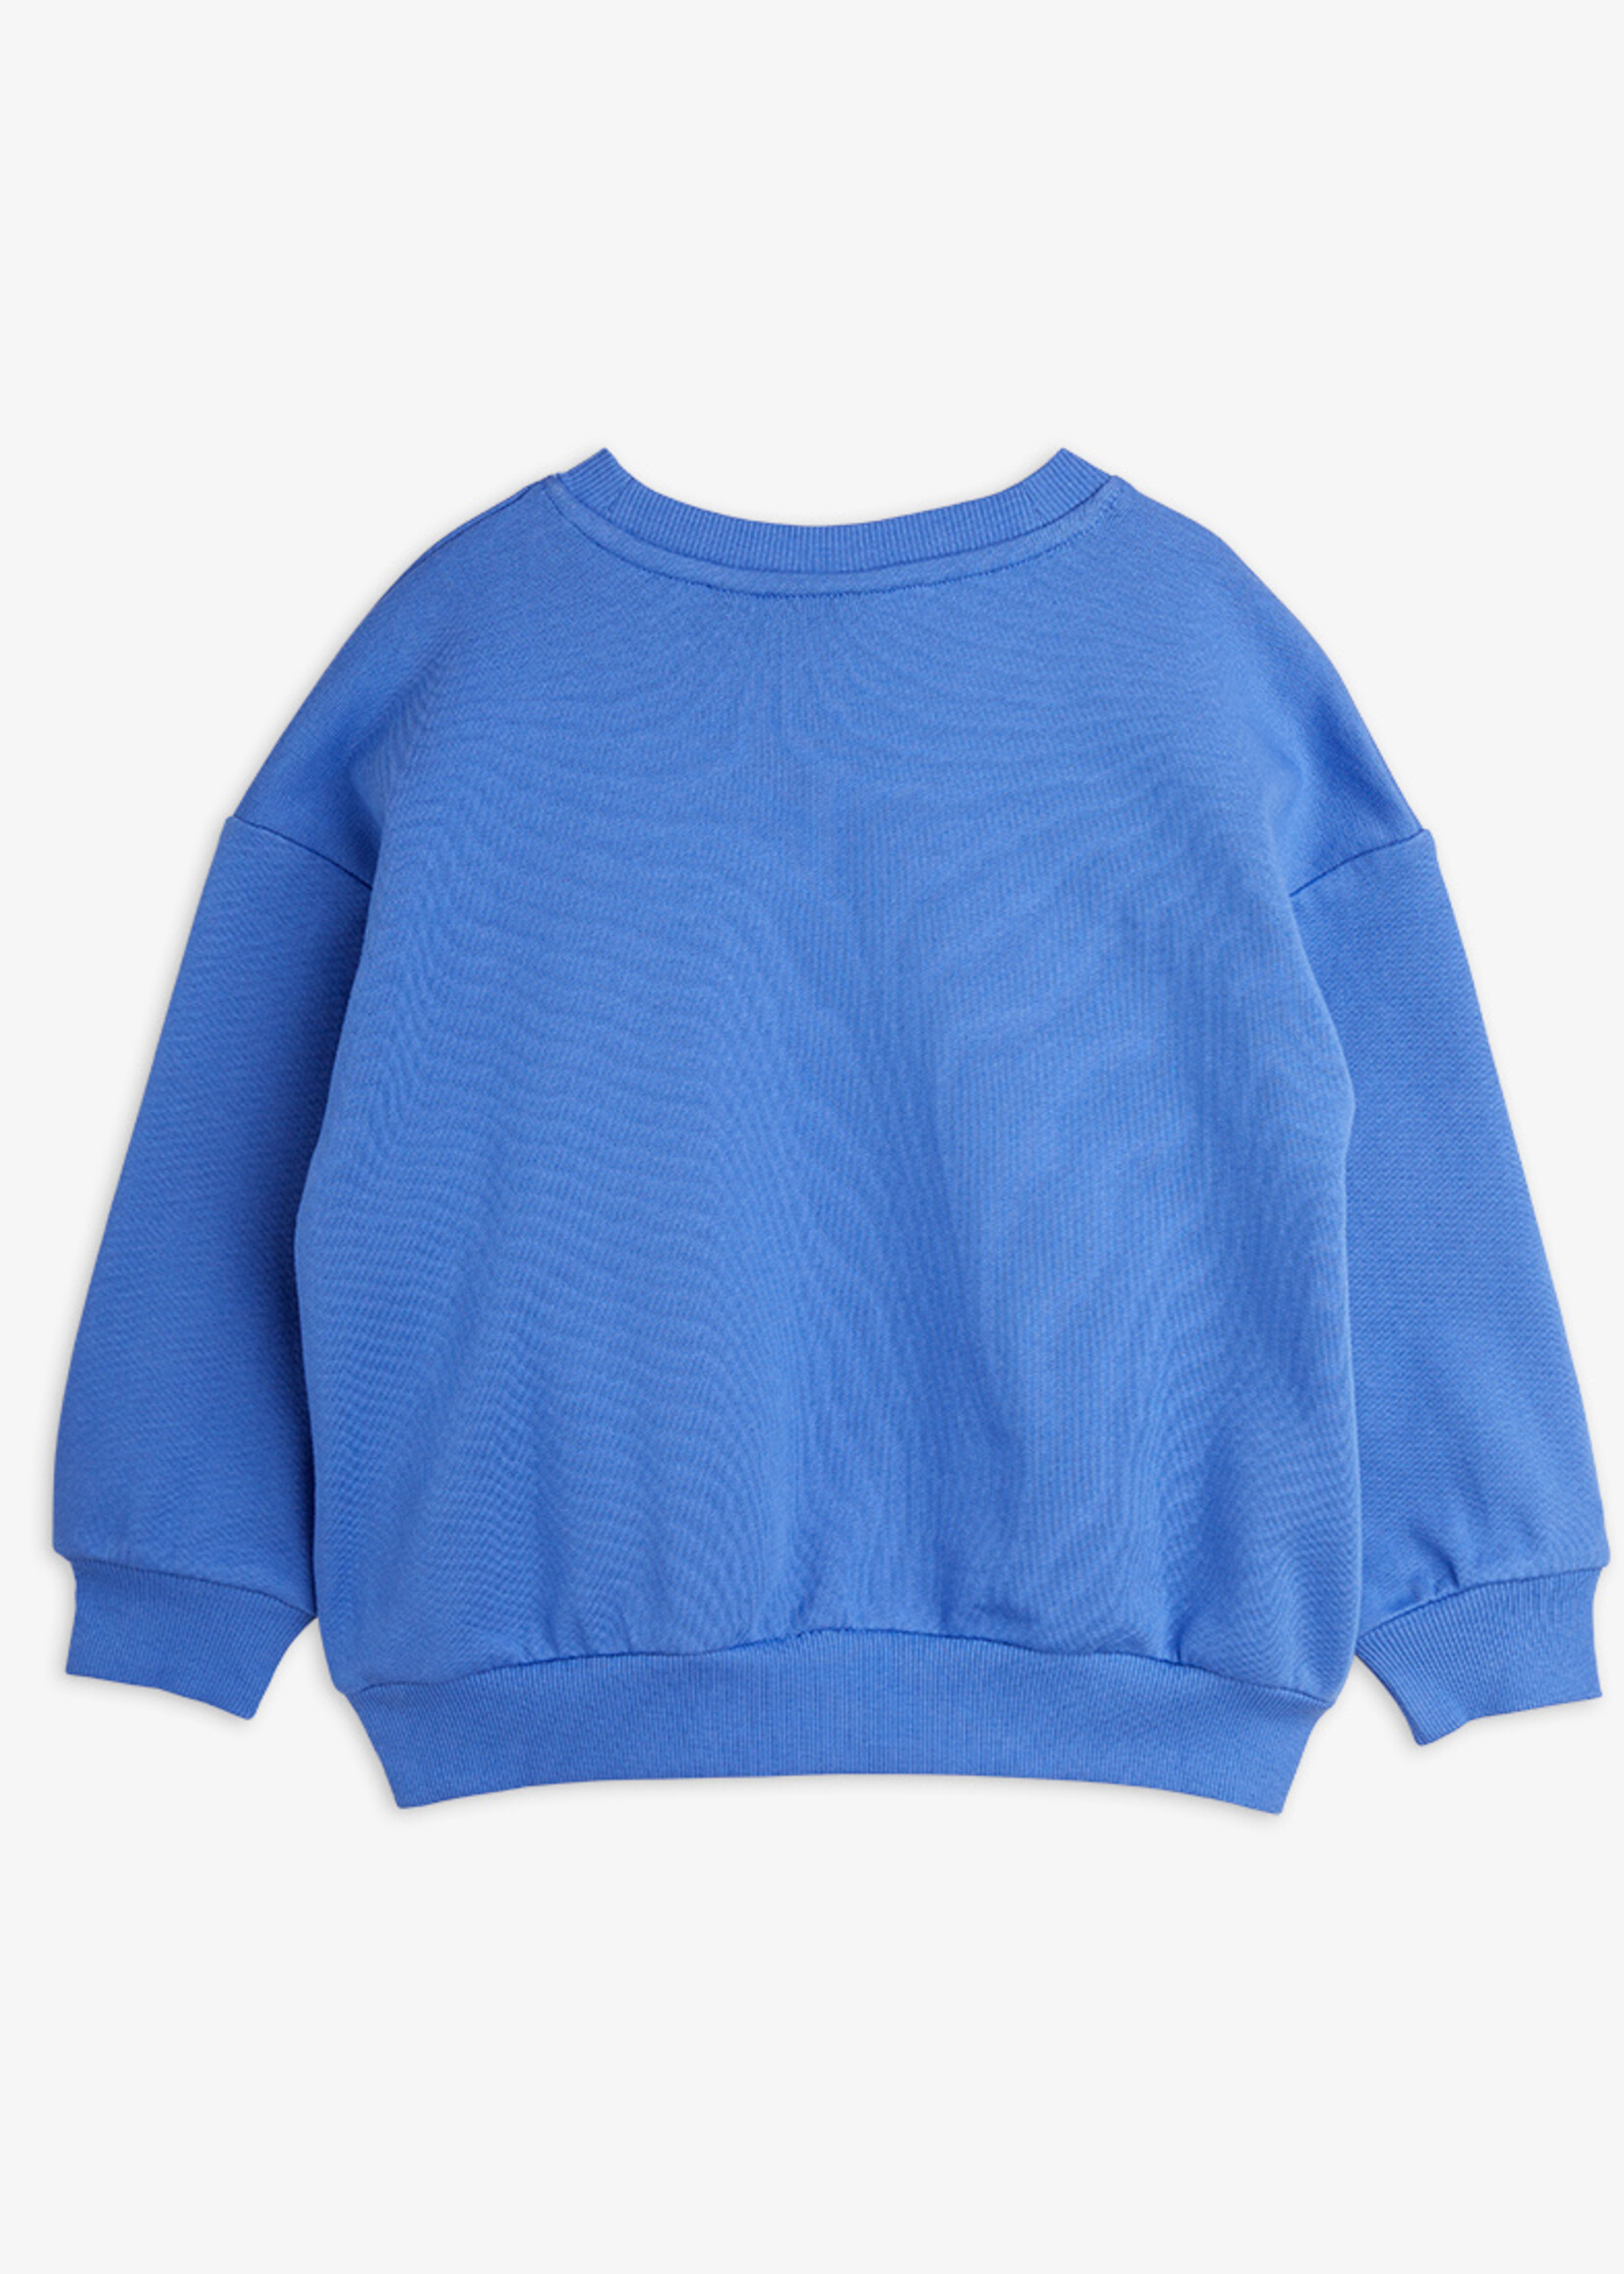 Mini Rodini MINI RODINI | Squirrel chenille emb sweatshirt – Blue